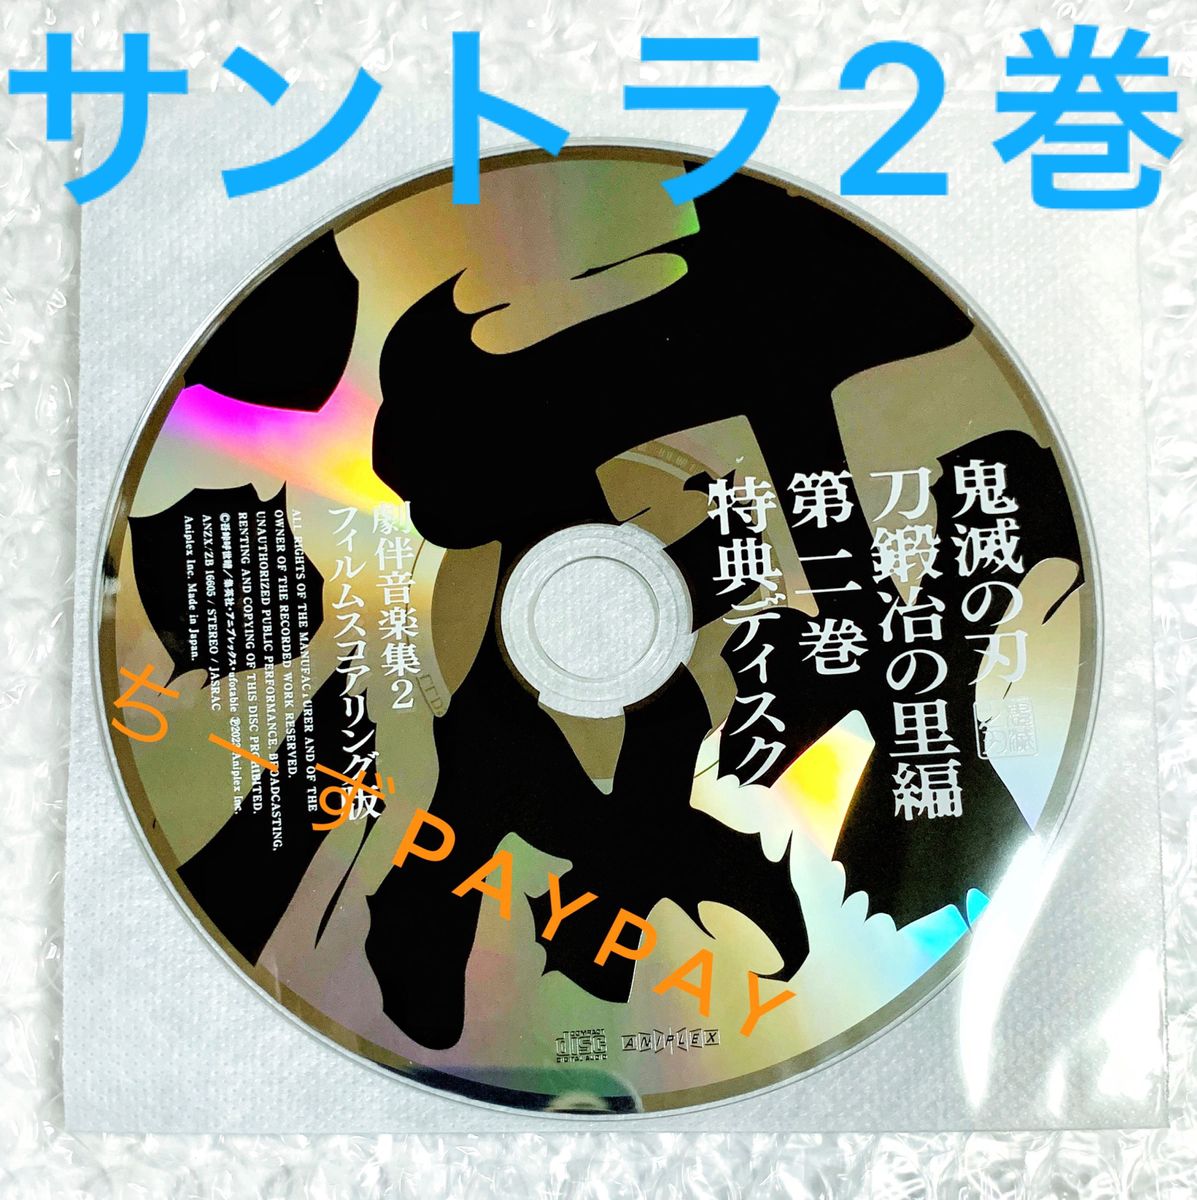 鬼滅の刃 刀鍛冶の里編 DVD Blu-ray 特典 劇伴音楽集 サウンドトラック サントラ CD 2巻